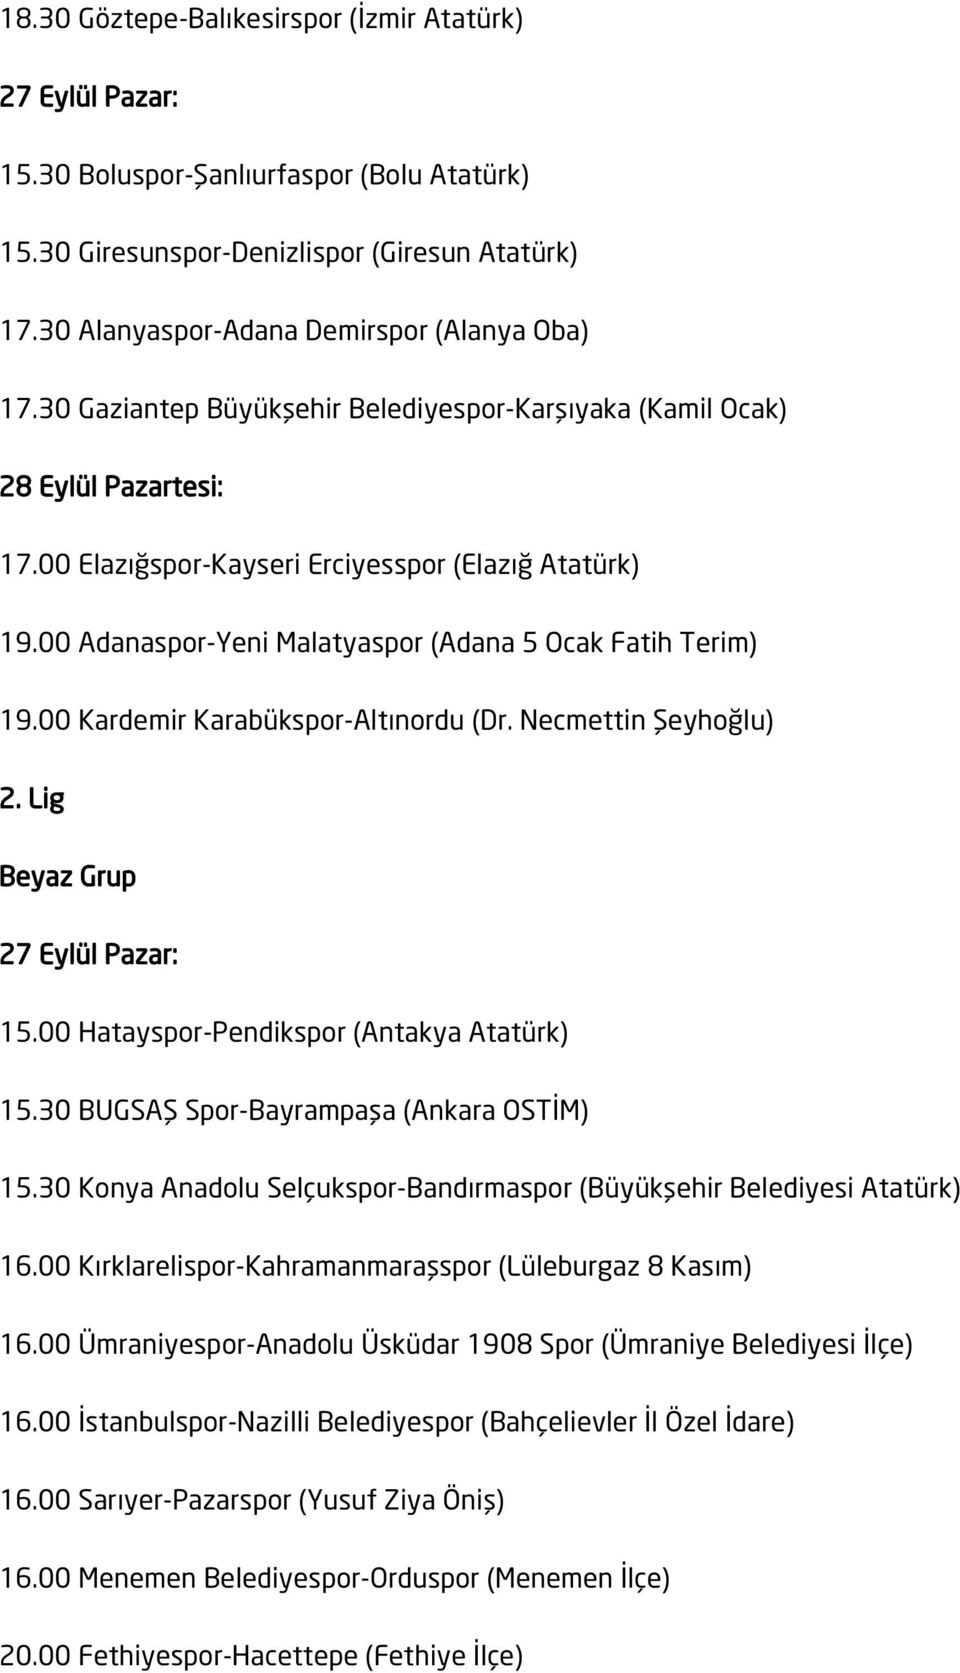 00 Kardemir Karabükspor-Altınordu (Dr. Necmettin Şeyhoğlu) 2. Lig Beyaz Grup 15.00 Hatayspor-Pendikspor (Antakya Atatürk) 15.30 BUGSAŞ Spor-Bayrampaşa (Ankara OSTİM) 15.